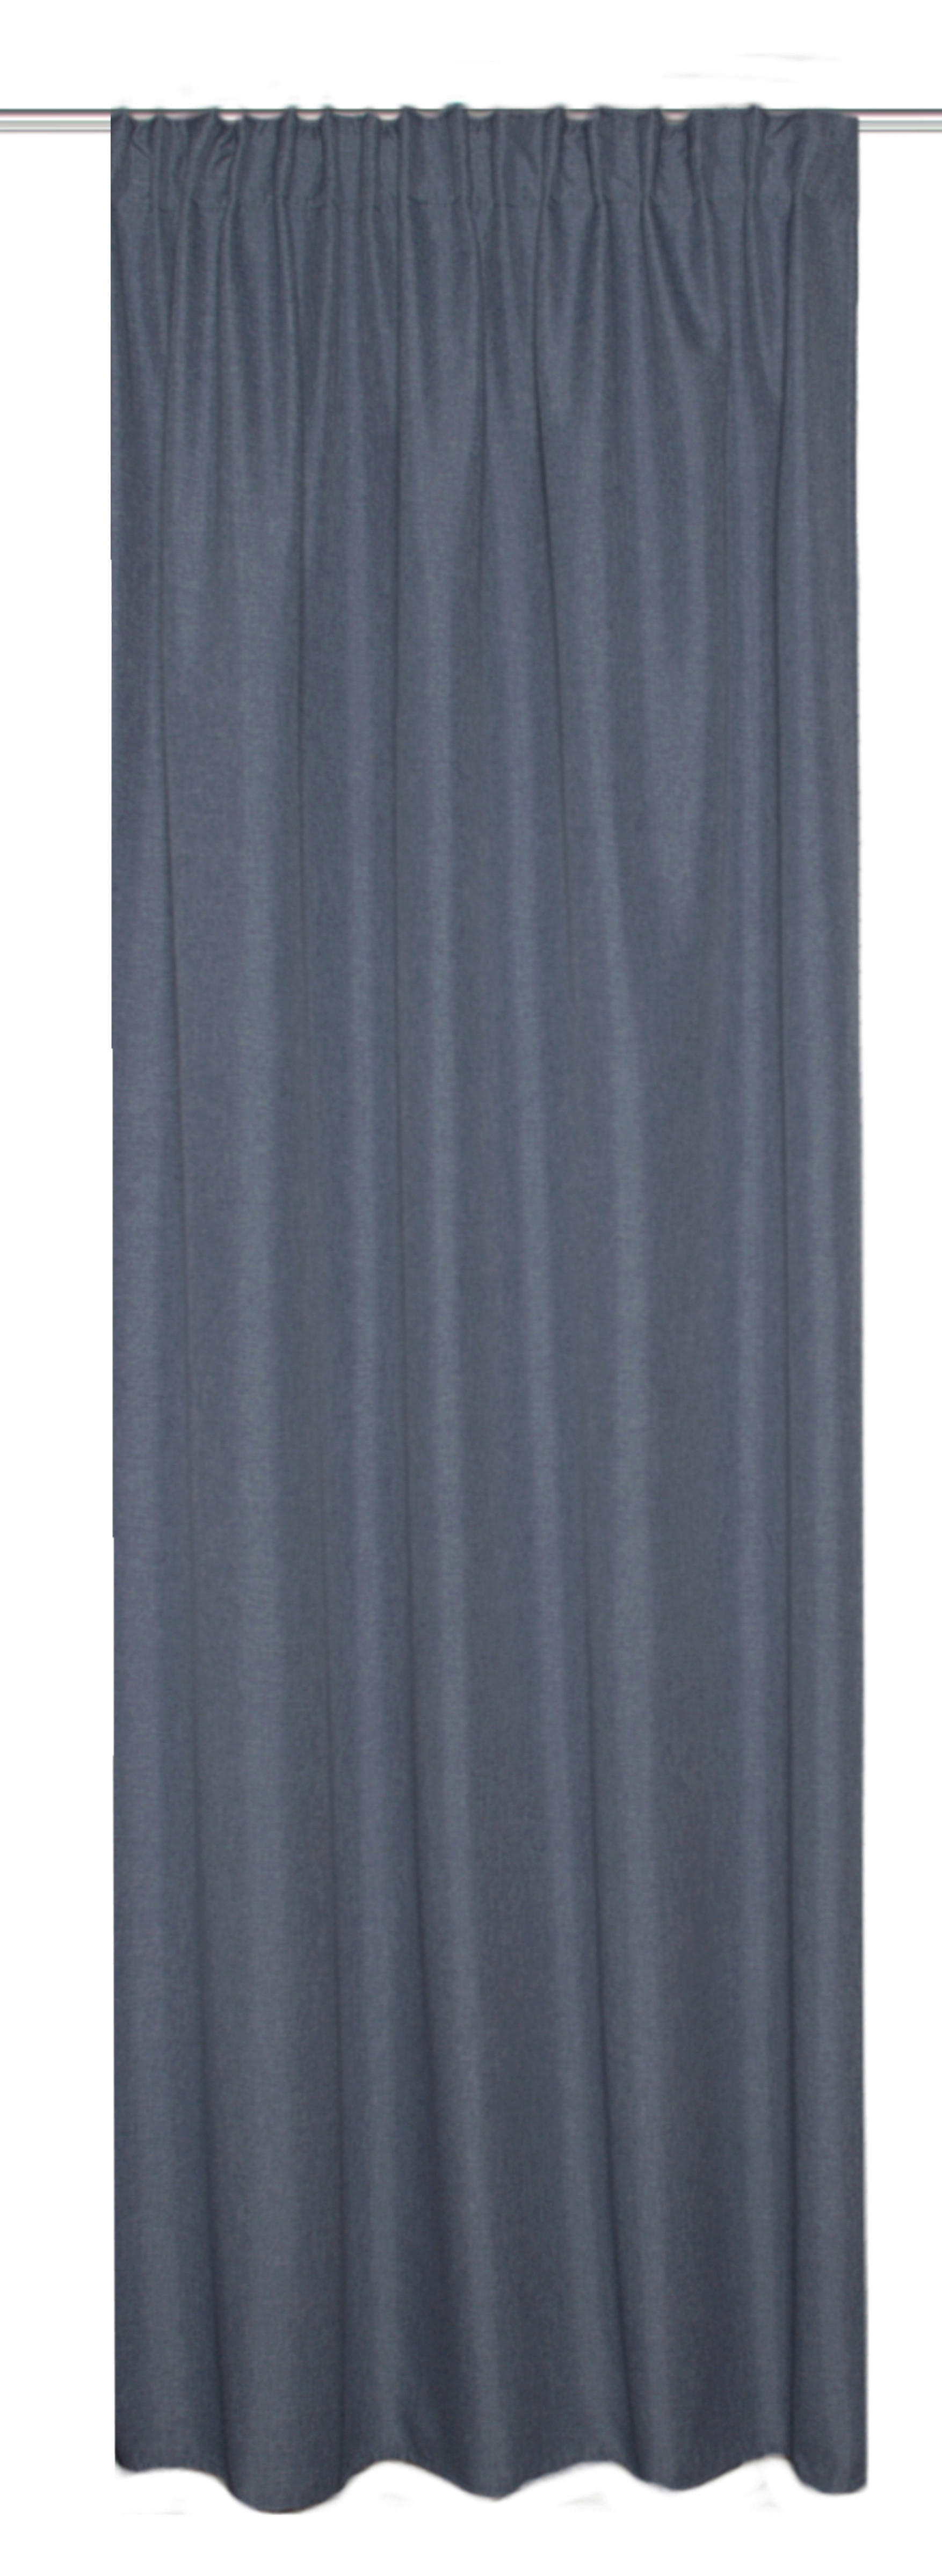 THERMOVORHANG  blickdicht  135/245 cm   - Blau, KONVENTIONELL, Textil (135/245cm) - Schmidt W. Gmbh